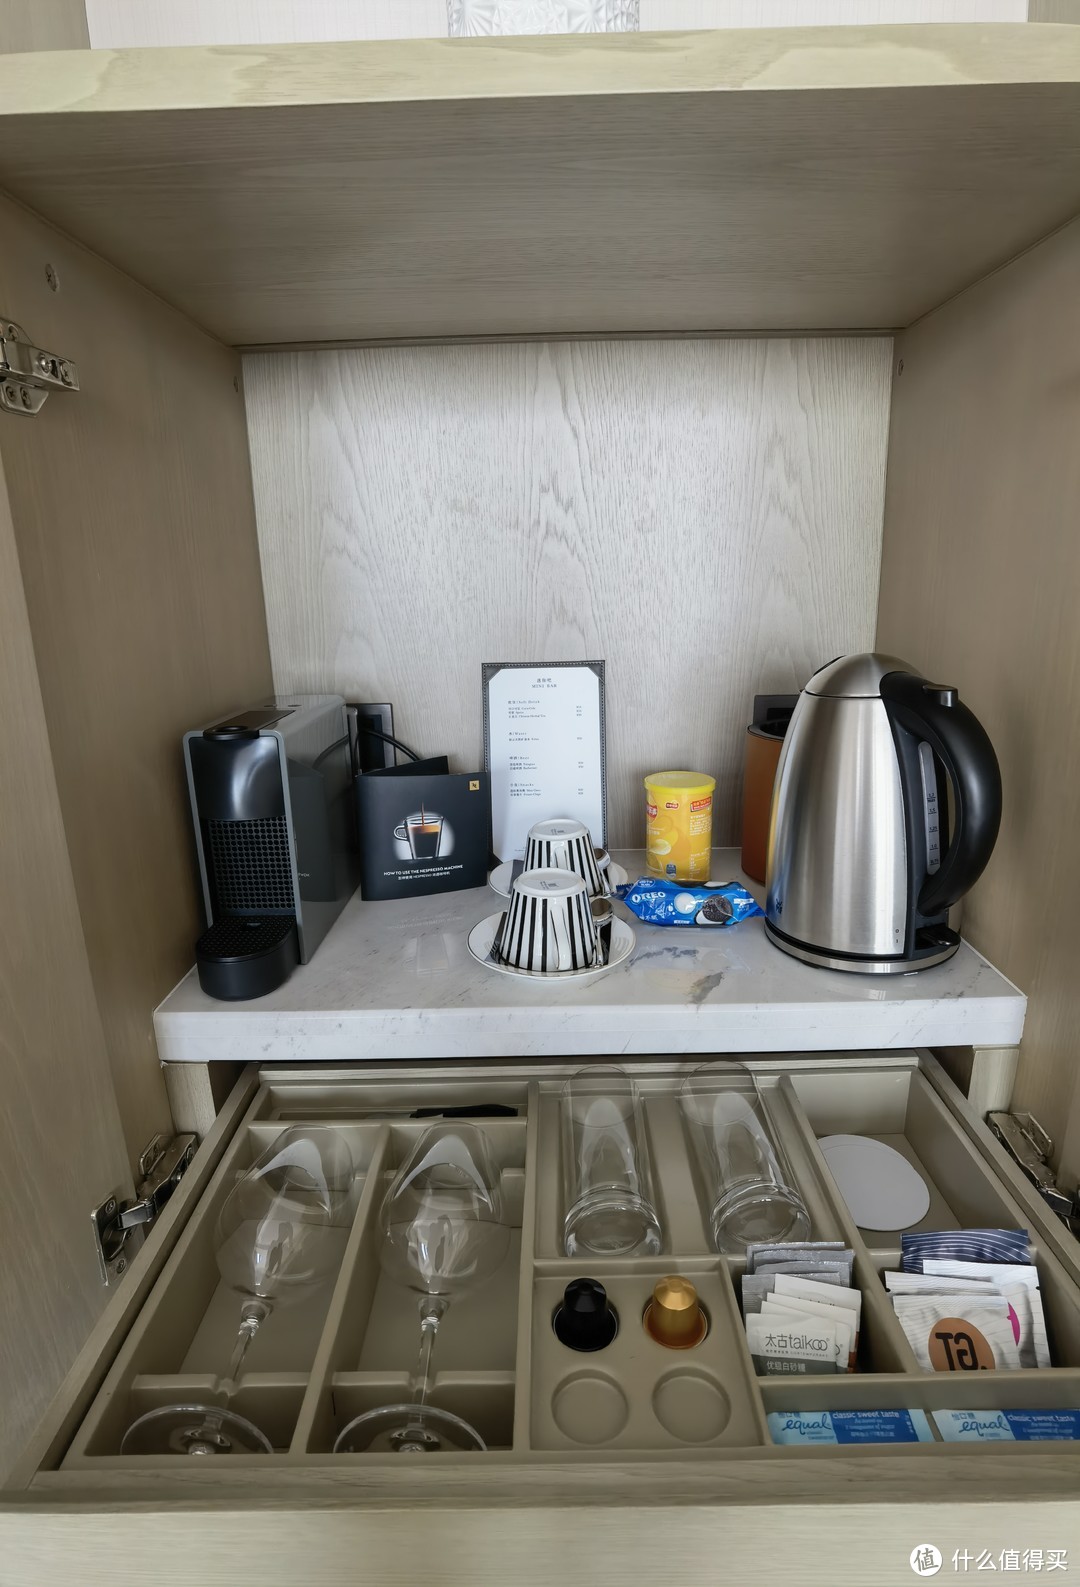 吧台上面是胶囊咖啡机、电热水壶、小吃